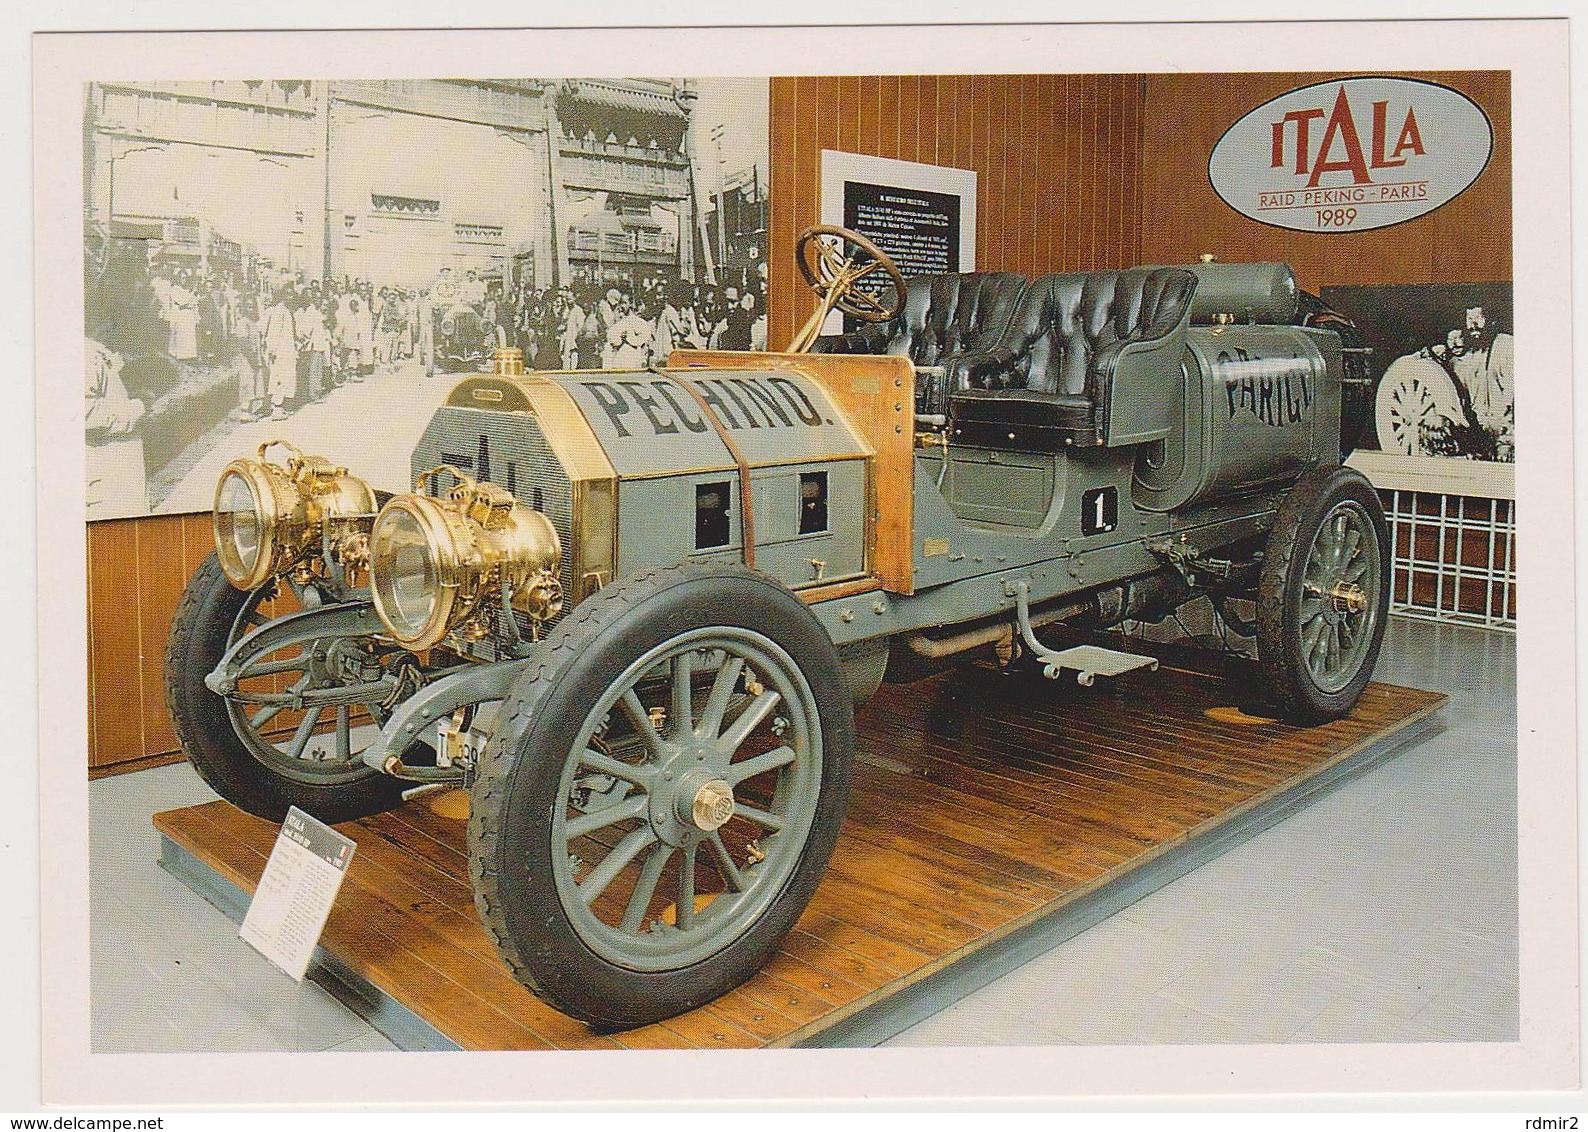 1446/ ITALA Mod. 35-45 HP, Raid Peking-Paris 1907. Museo Dell'Automobile Carlo Biscaretti Di Ruffia, Torino. - Turismo